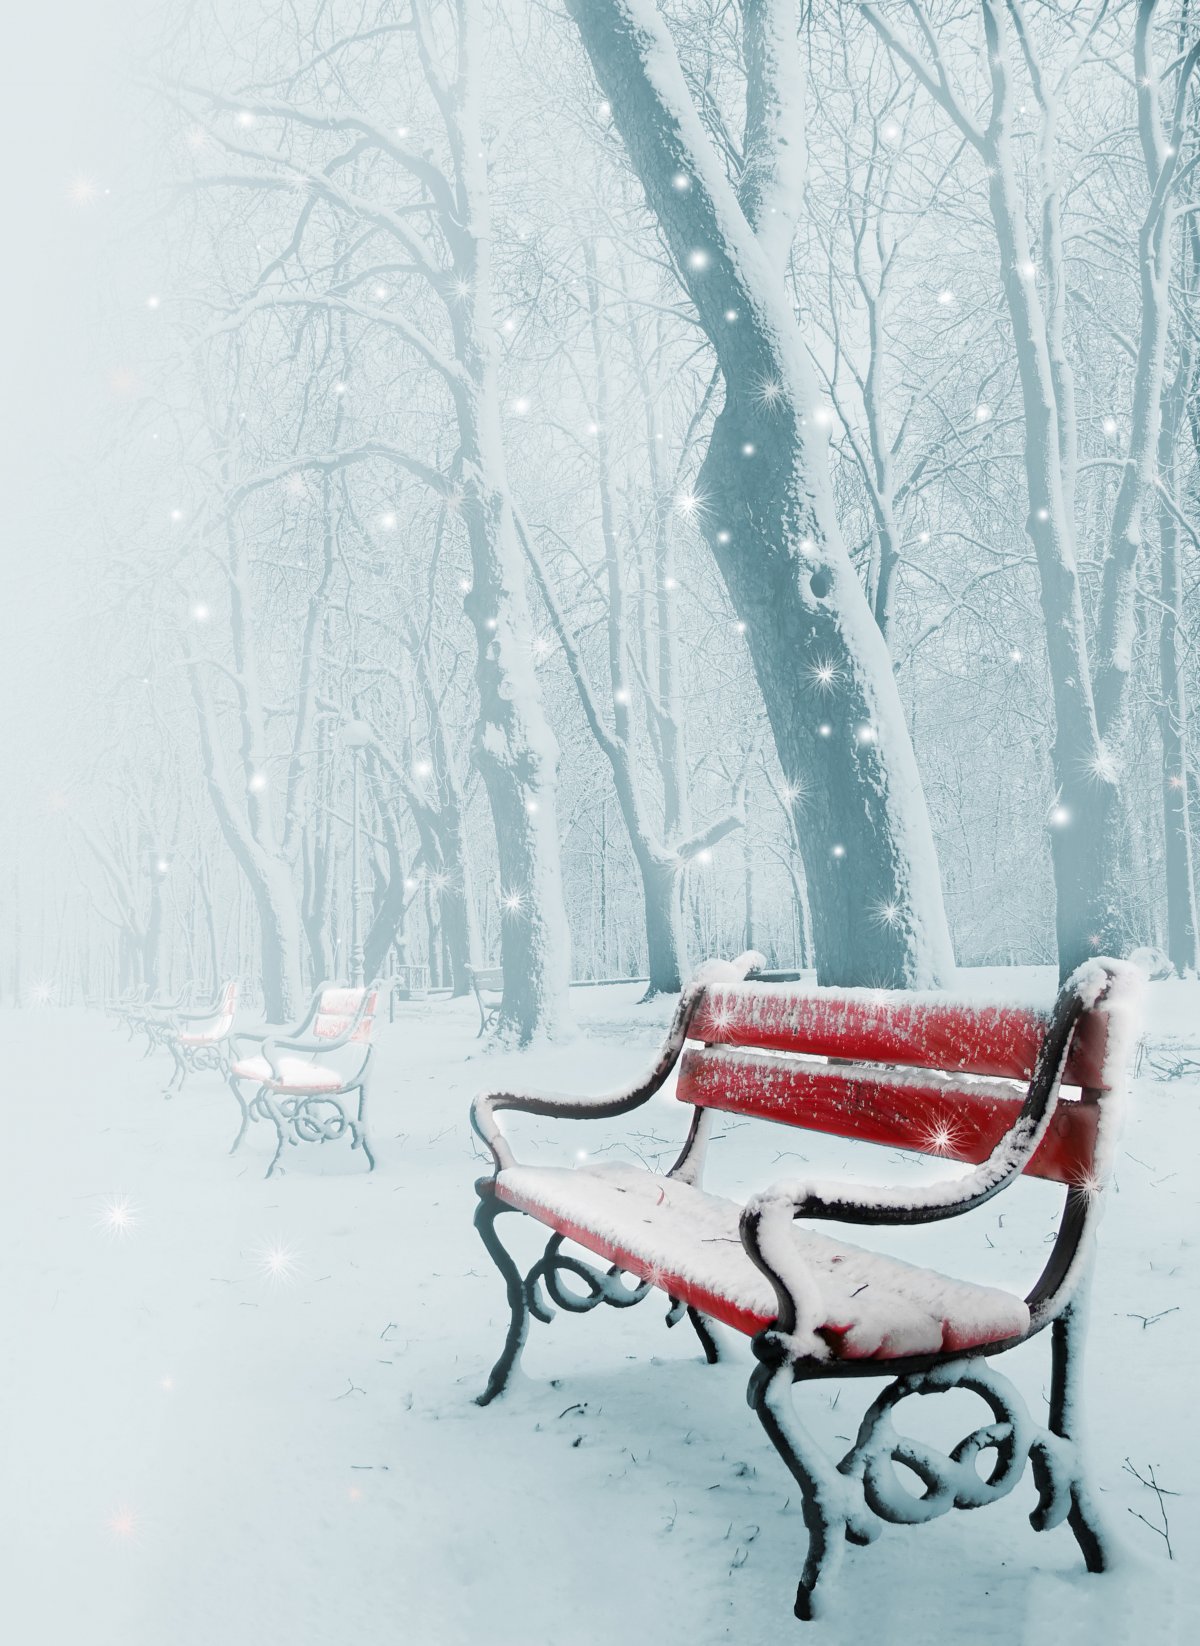 Beautiful romantic snow scene pictures